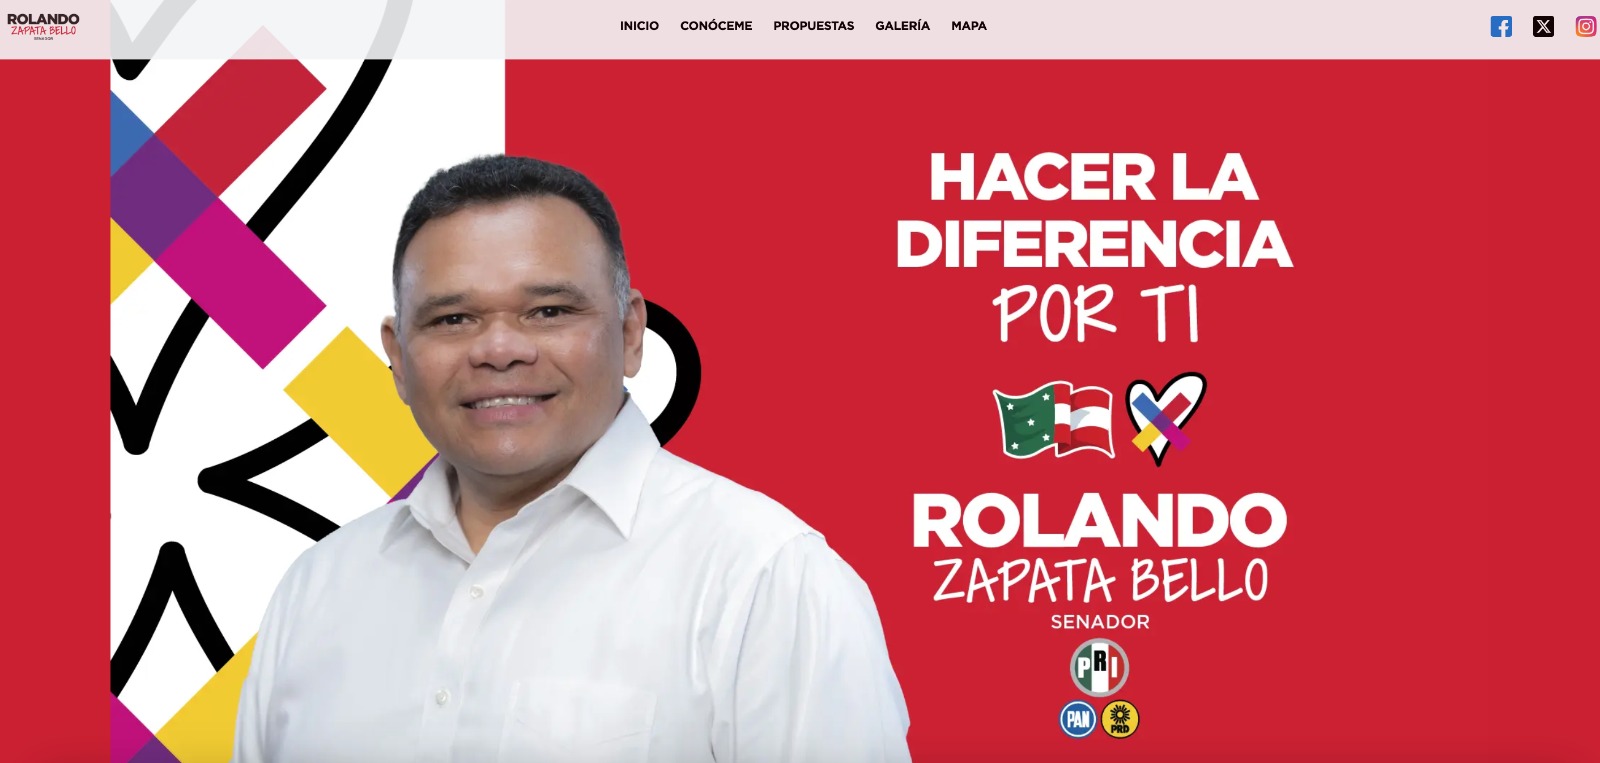 Rolando hace campaña también en medios digitales